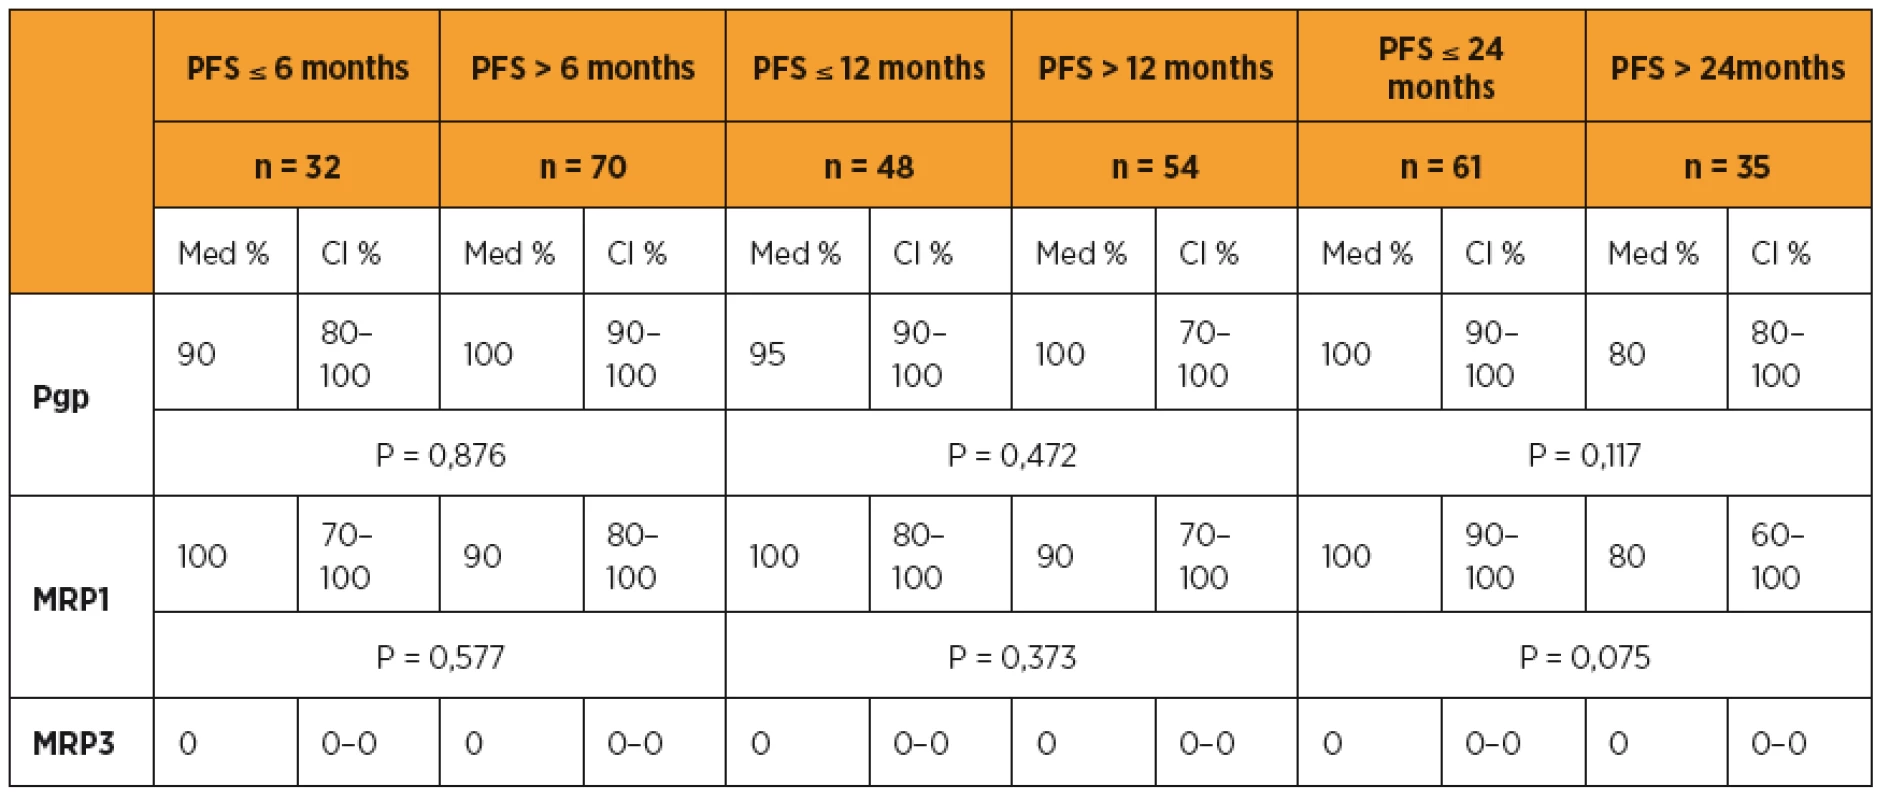 Pgp, MRP1, MRP3 a délka období PFS